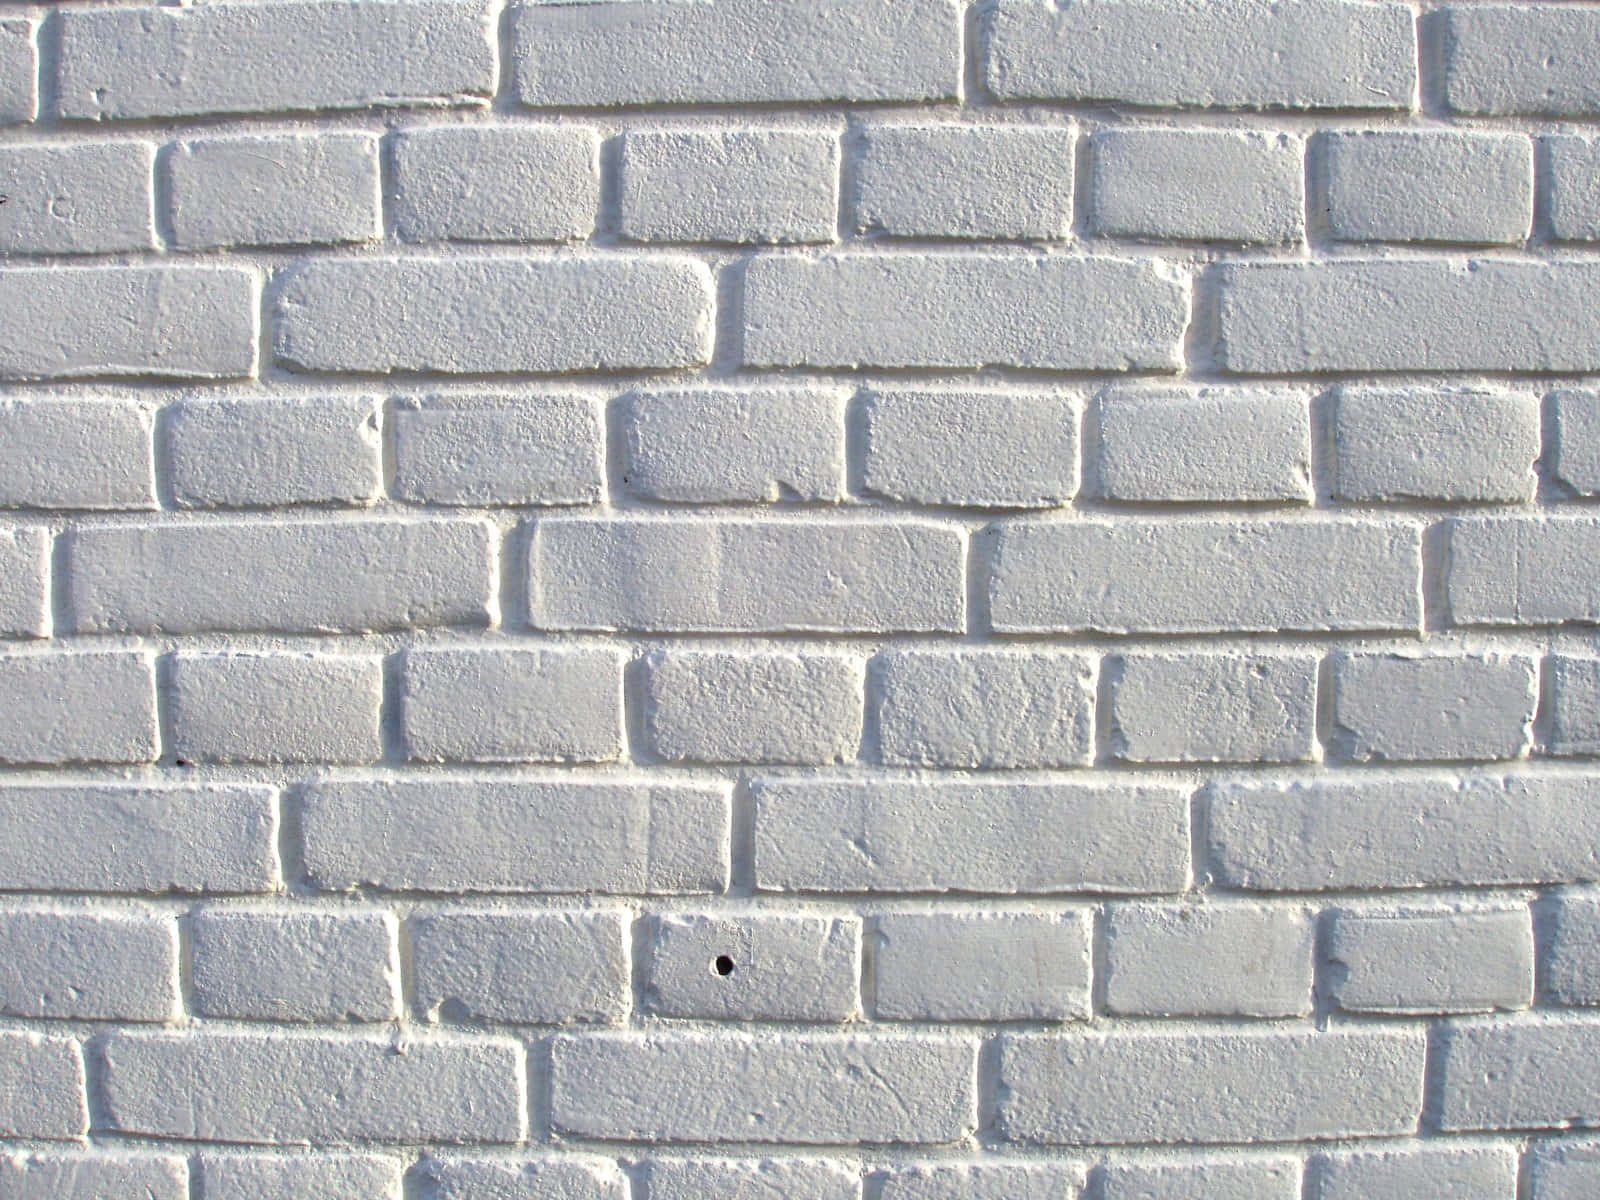 Stunning white brick wall.